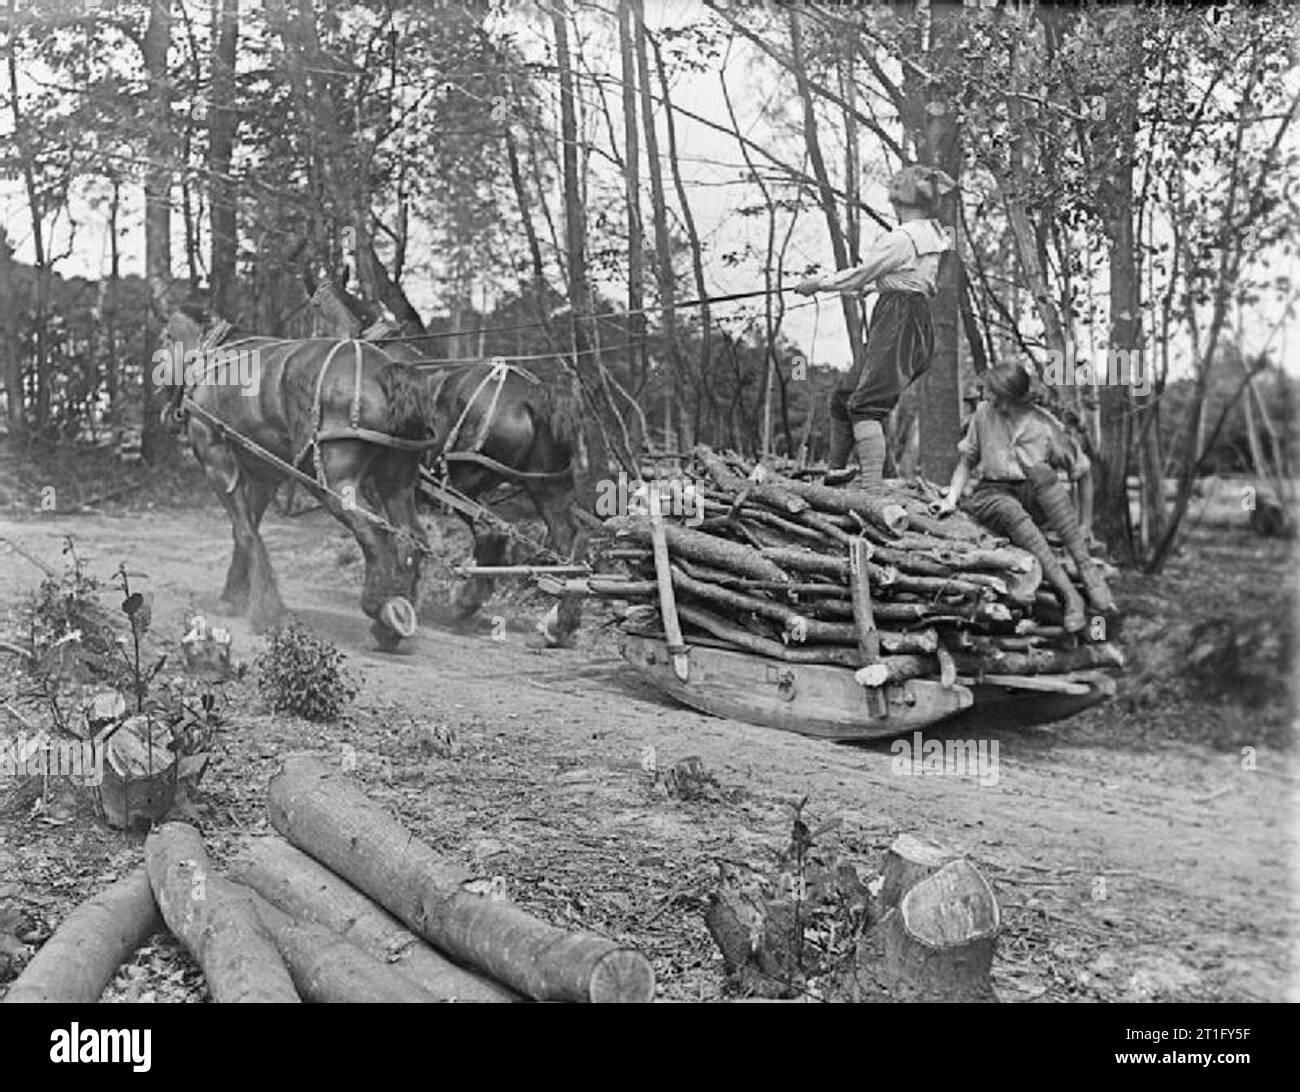 Landwirtschaft in Großbritannien während des Ersten Weltkriegs Mitglieder der Women's Land Army Forstwirtschaft Corps mit einem Pferdeschlitten Holz während des Ersten Weltkrieges zu transportieren. Stockfoto